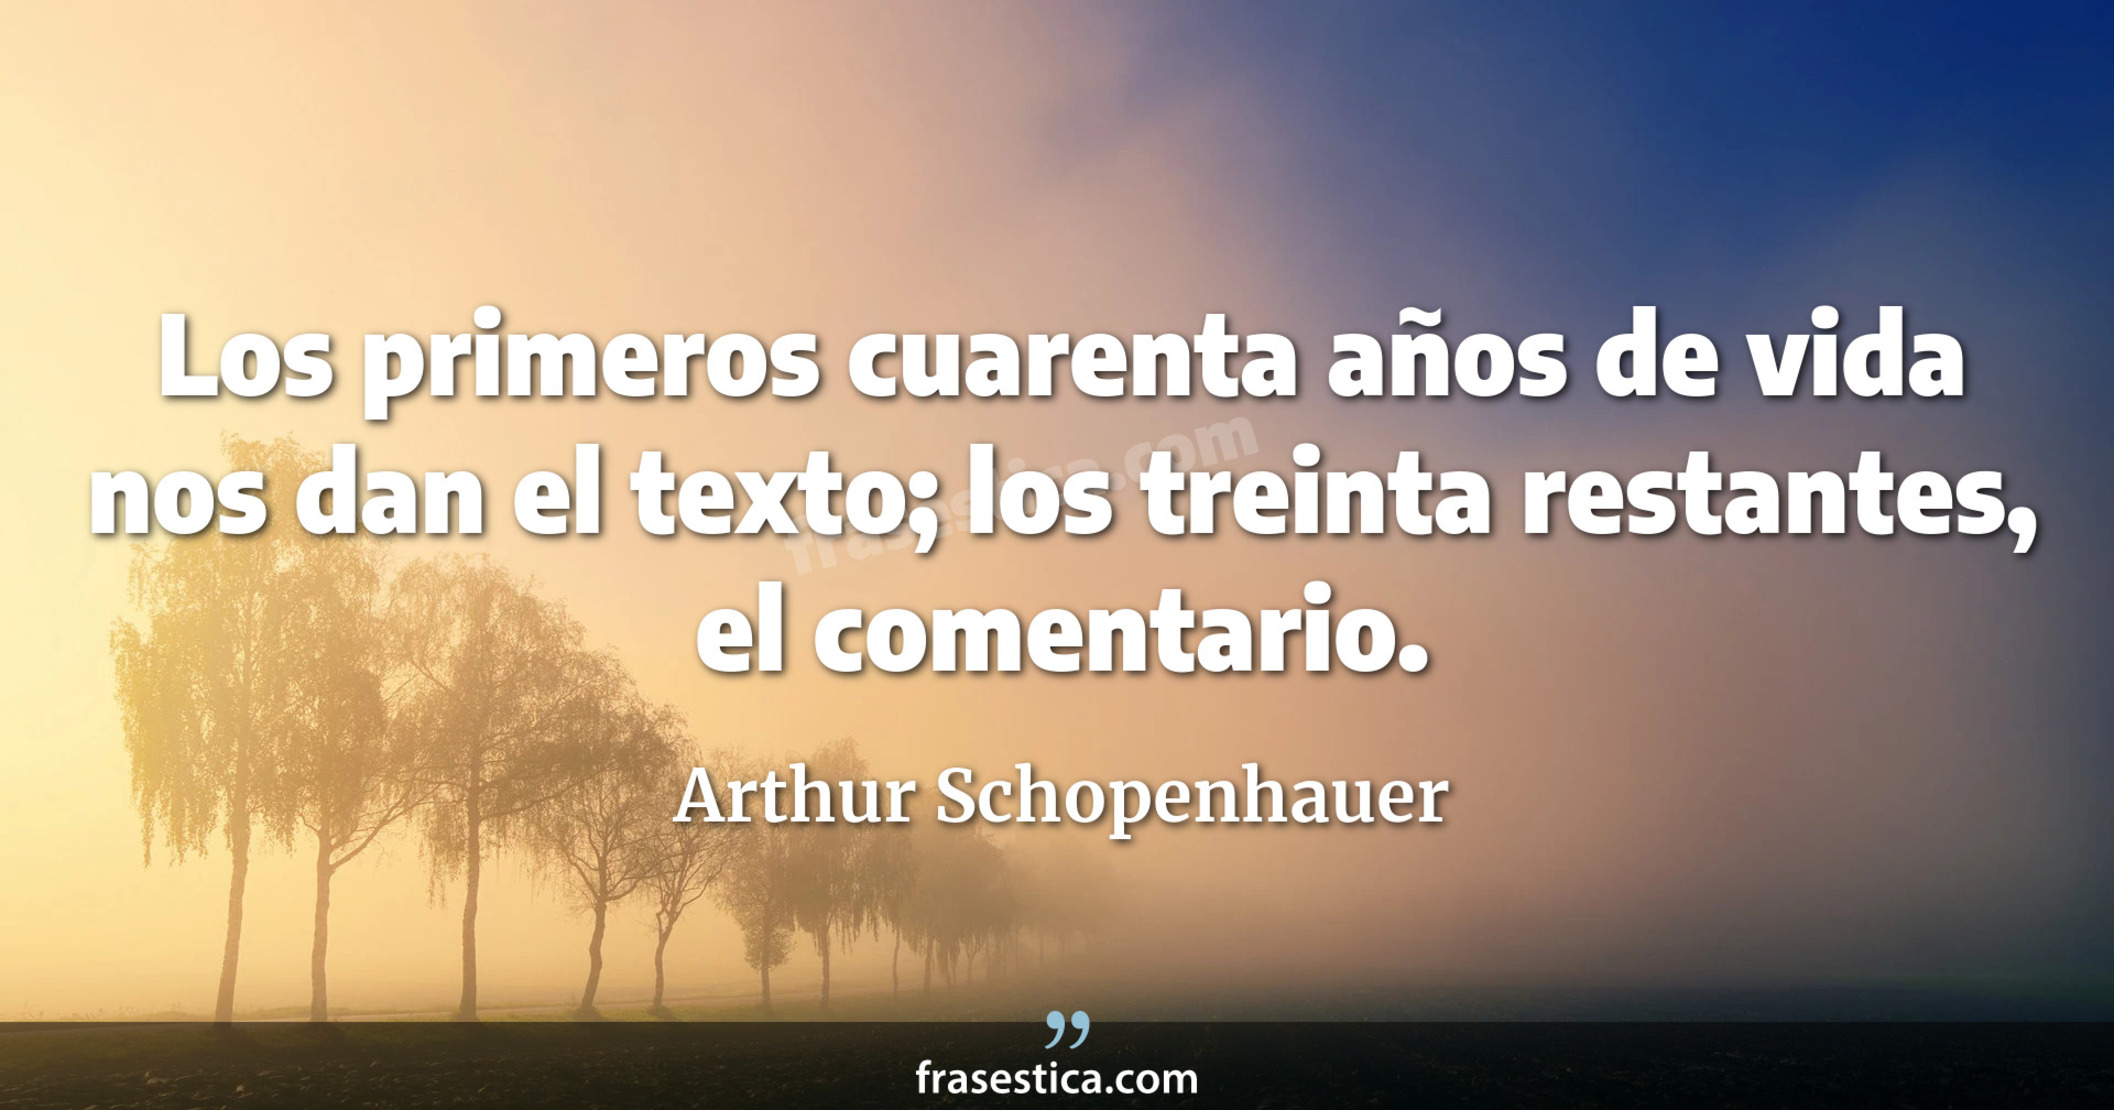 Los primeros cuarenta años de vida nos dan el texto; los treinta restantes, el comentario. - Arthur Schopenhauer